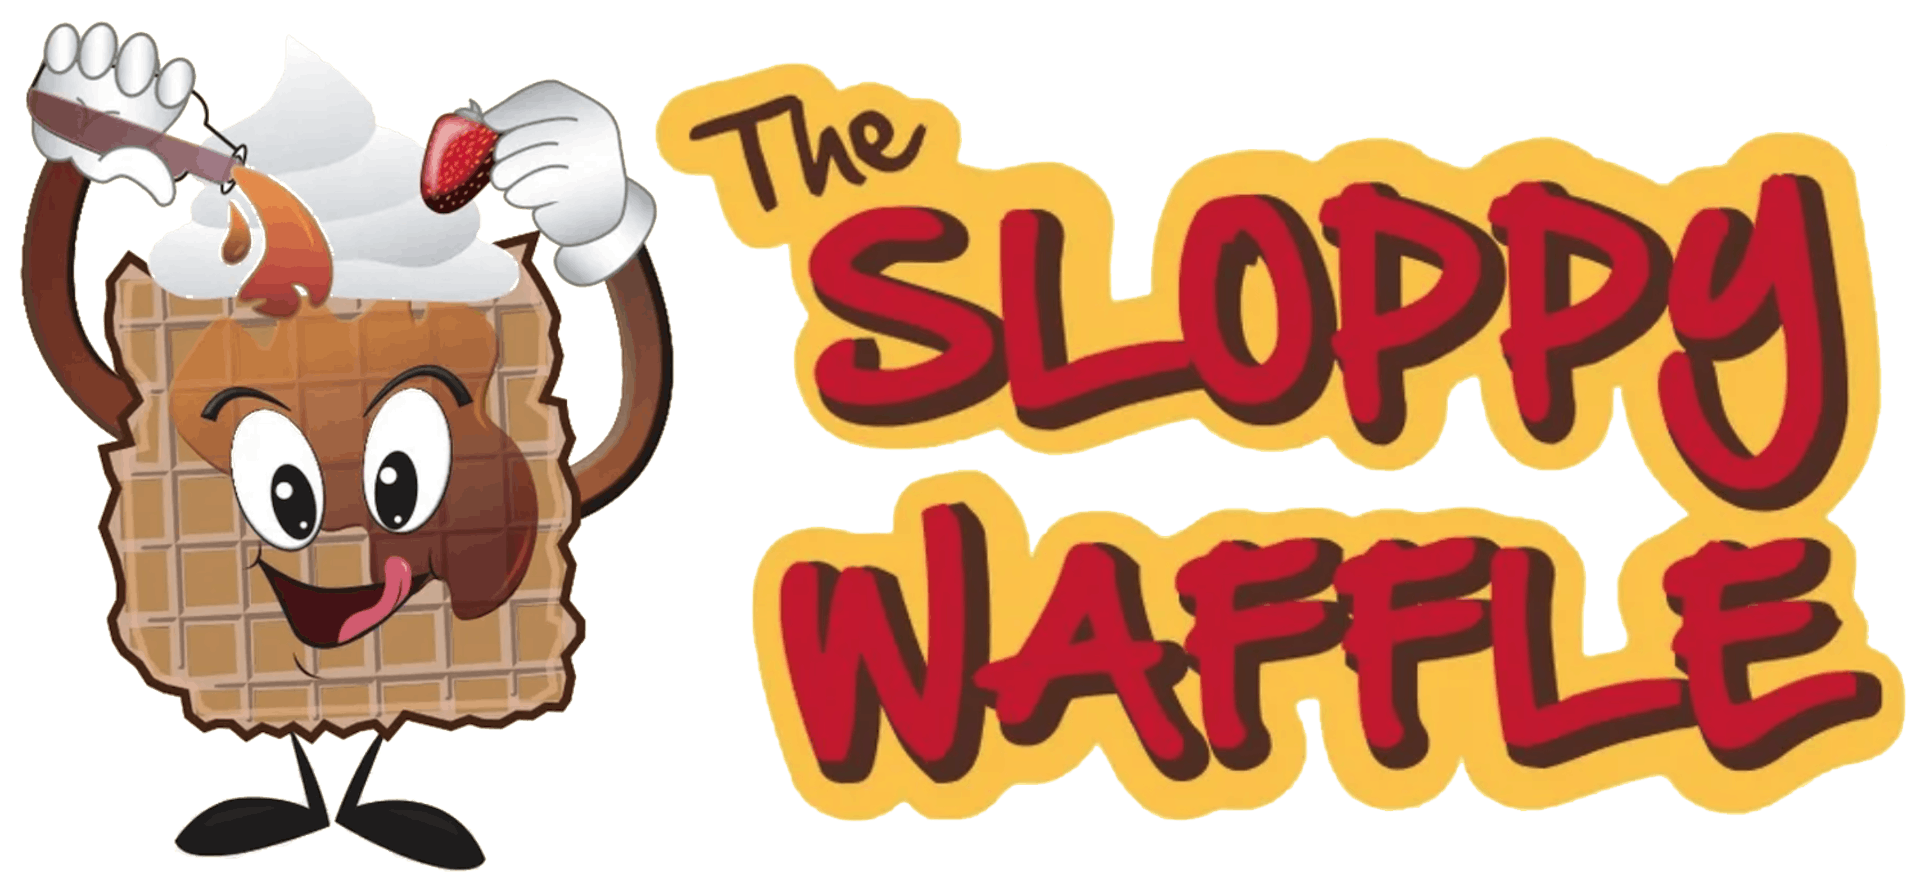 The Sloppy Waffle